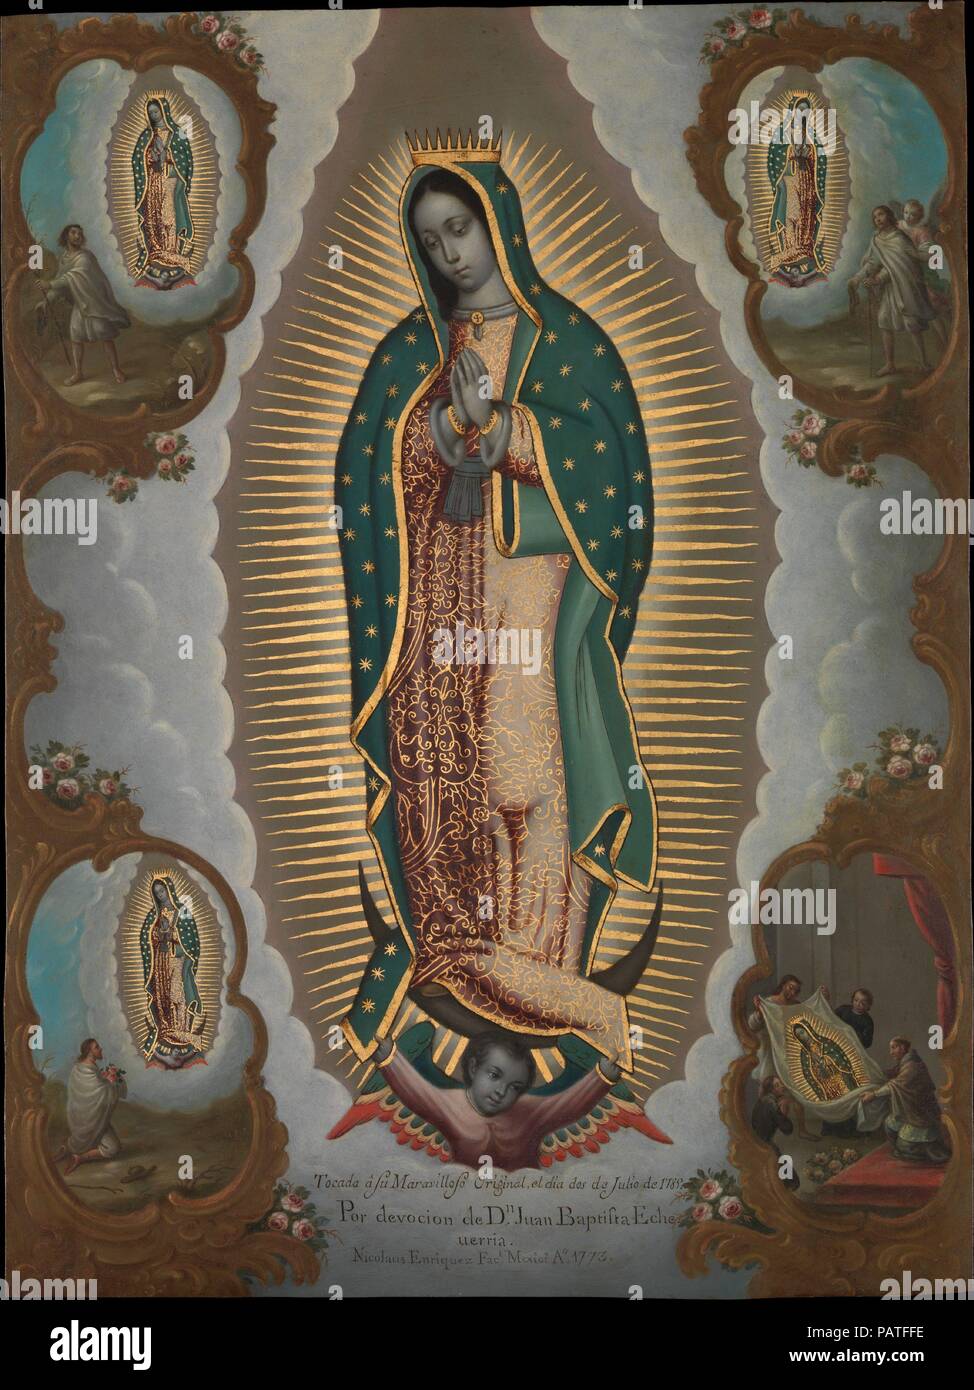 La Vergine di Guadalupe con quattro apparizioni. Artista: Nicolás Enríquez (Messicano, 1704-1790). Dimensioni: 22 1/4 × 16 1/2 in. (56,5 × 41,9 cm) incorniciato: 25 1/4 × 19 7/8 x 1 3/8 in. (64,1 × 50,5 × 3,5 cm). Data: 1773. Nel 1773, quando Nicolás Enríquez dipinto di questa copia della Vergine di Guadalupe, che era la più venerata immagine sacra nella Nuova Spagna. In questo dipinto la miracolosa immagine è circondata da quattro scene che attestano la sua origine divina. Essi registrano la Vergine di tre apparenze all'indio Juan Diego al Tepeyac, vicino a Città del Messico e culmineranno nella rivelazione della sua immagine Foto Stock